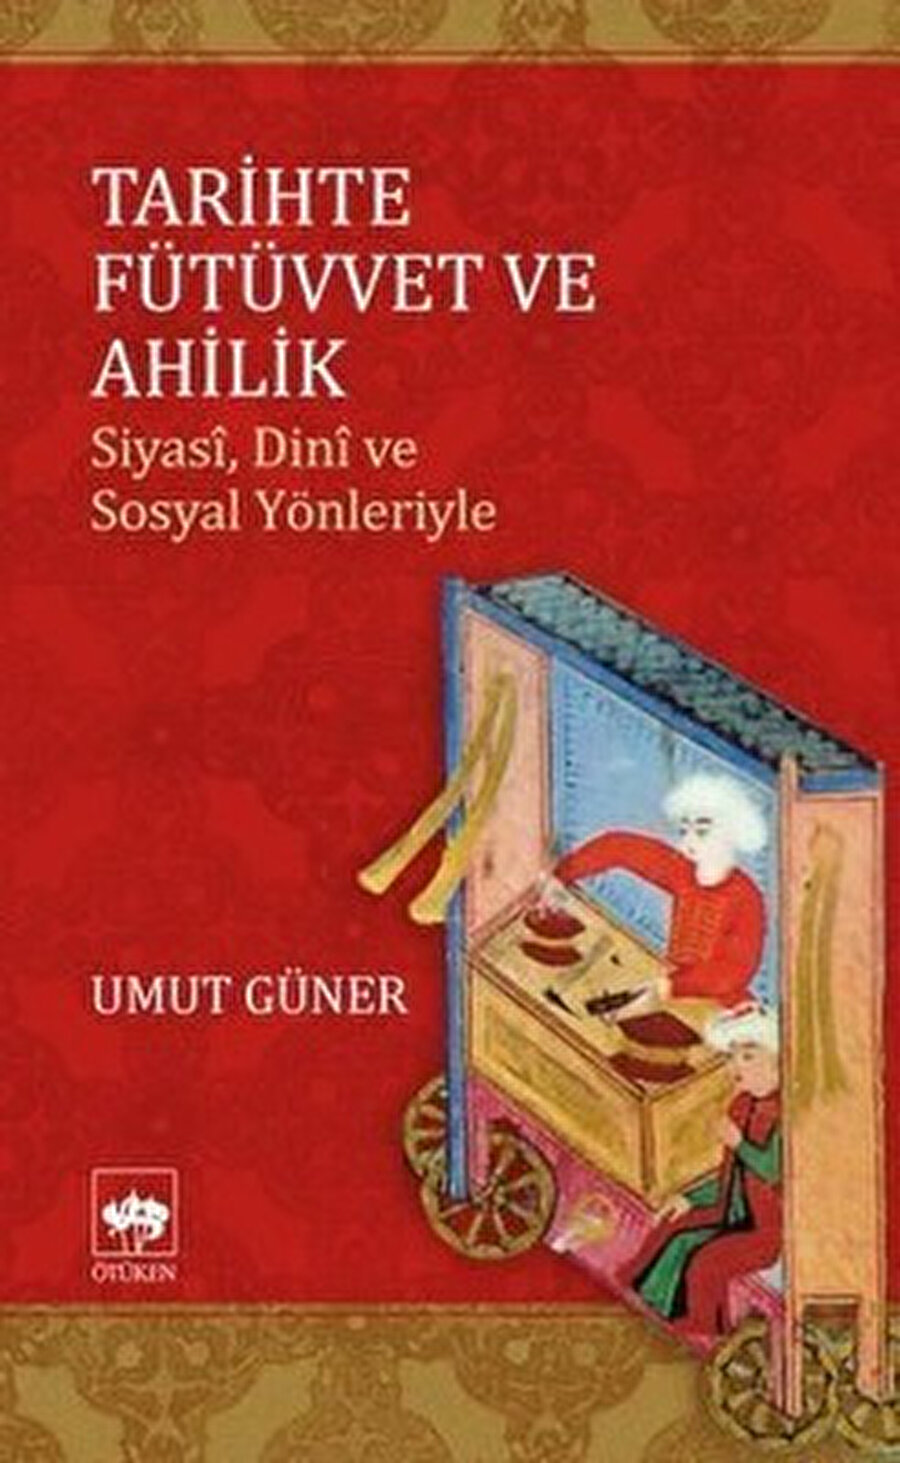 Bizans’tan, Selçuklu’ya ve nihayetinde Osmanlı’ya ulaşan ahiliği gerek topluma gerek ekonomiye kattığı değerlerle anlatıyor Umut Güner. 